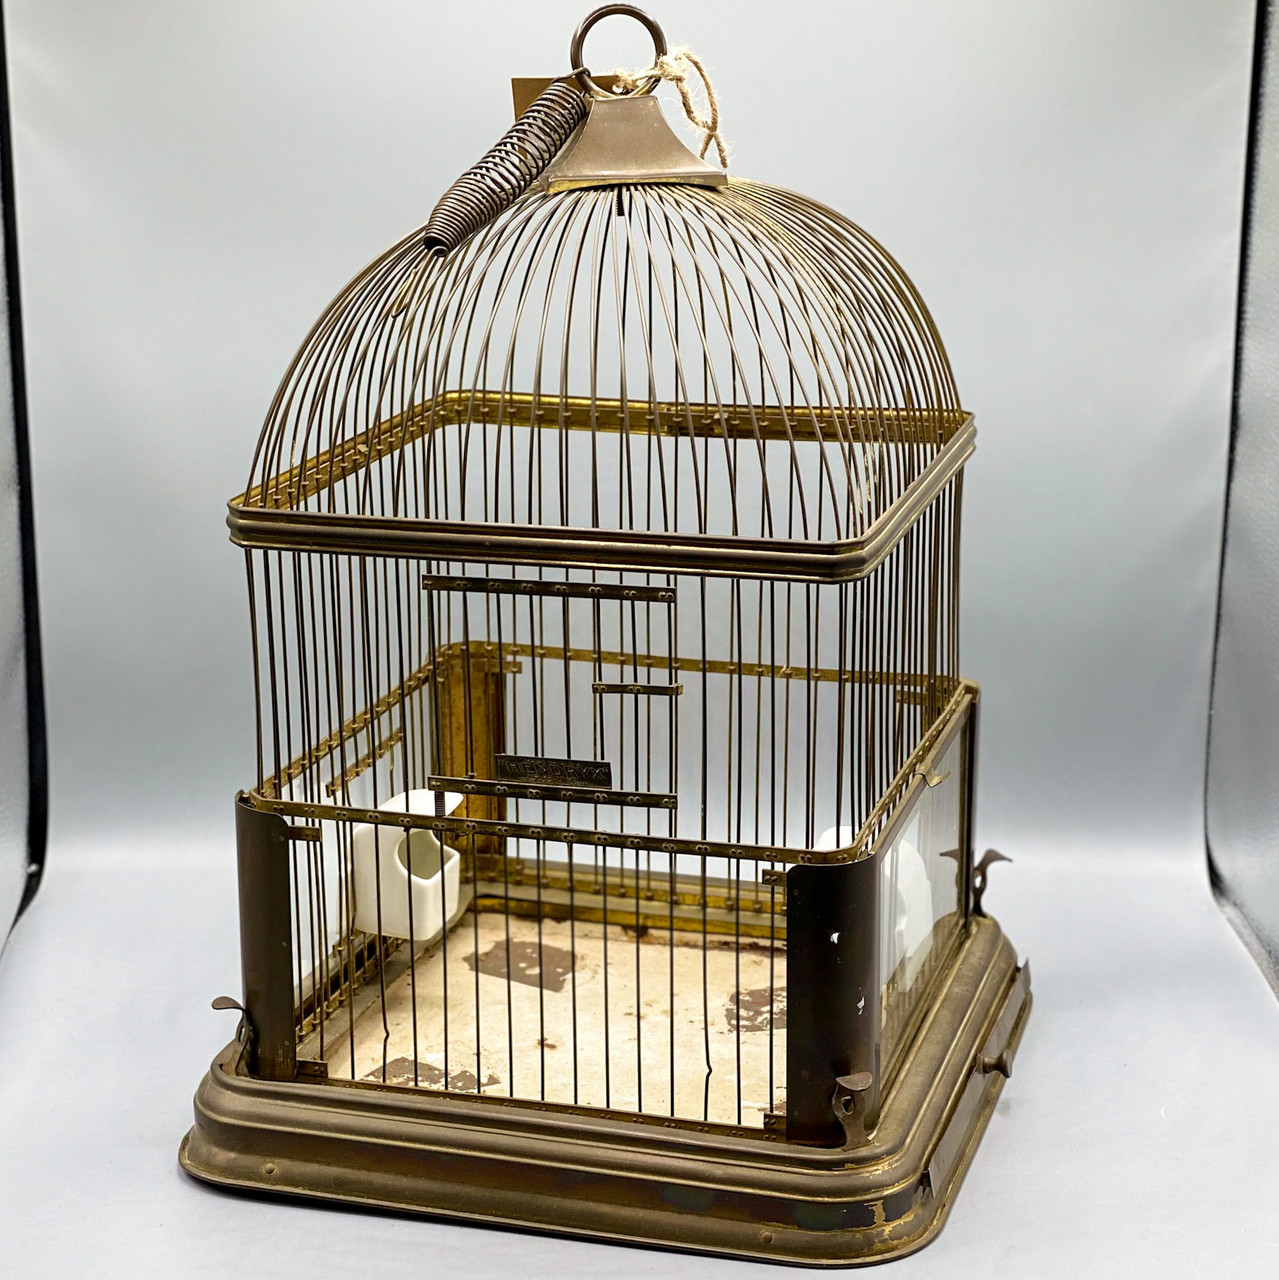 Hendryx Bird Cage - Foter  Bird cage decor, Vintage bird cage